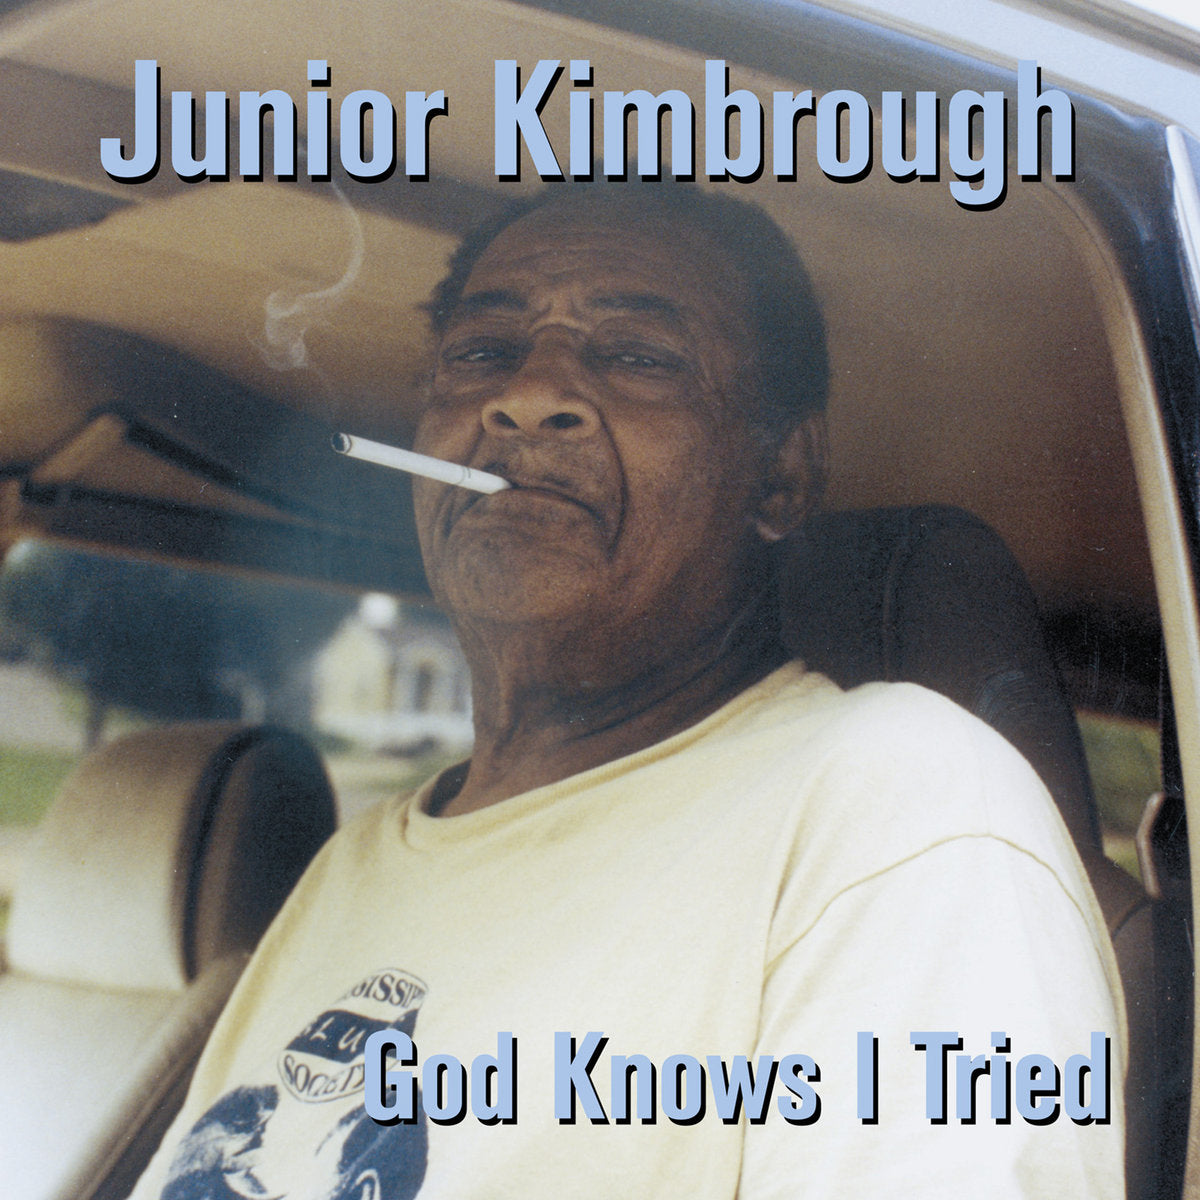 Kimbrough, Junior "God Knows I Tried"